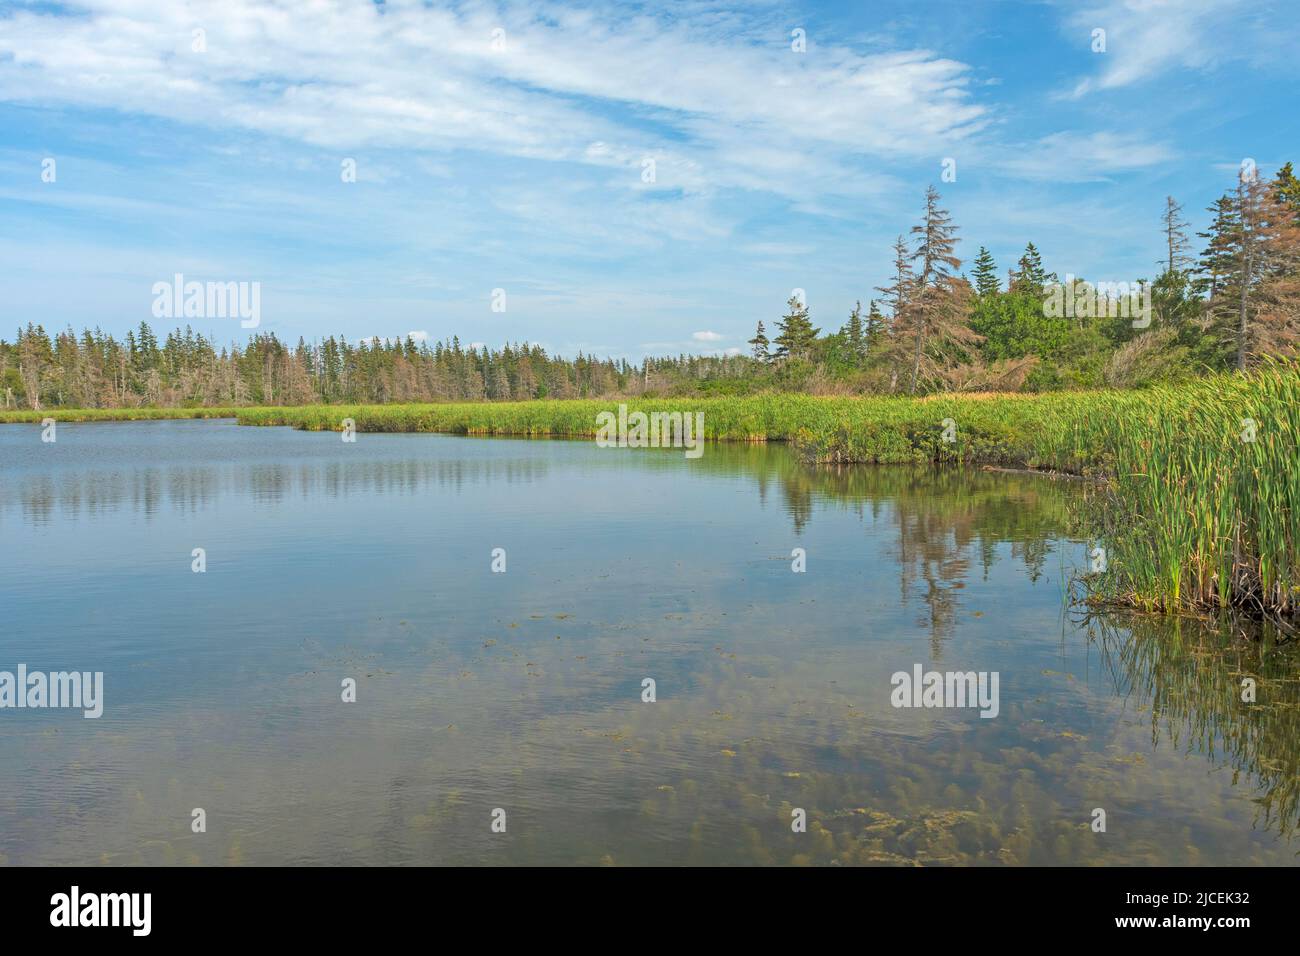 Quiet Day on Coastal Pond nel Parco Nazionale dell'Isola del Principe Edoardo in Canada Foto Stock